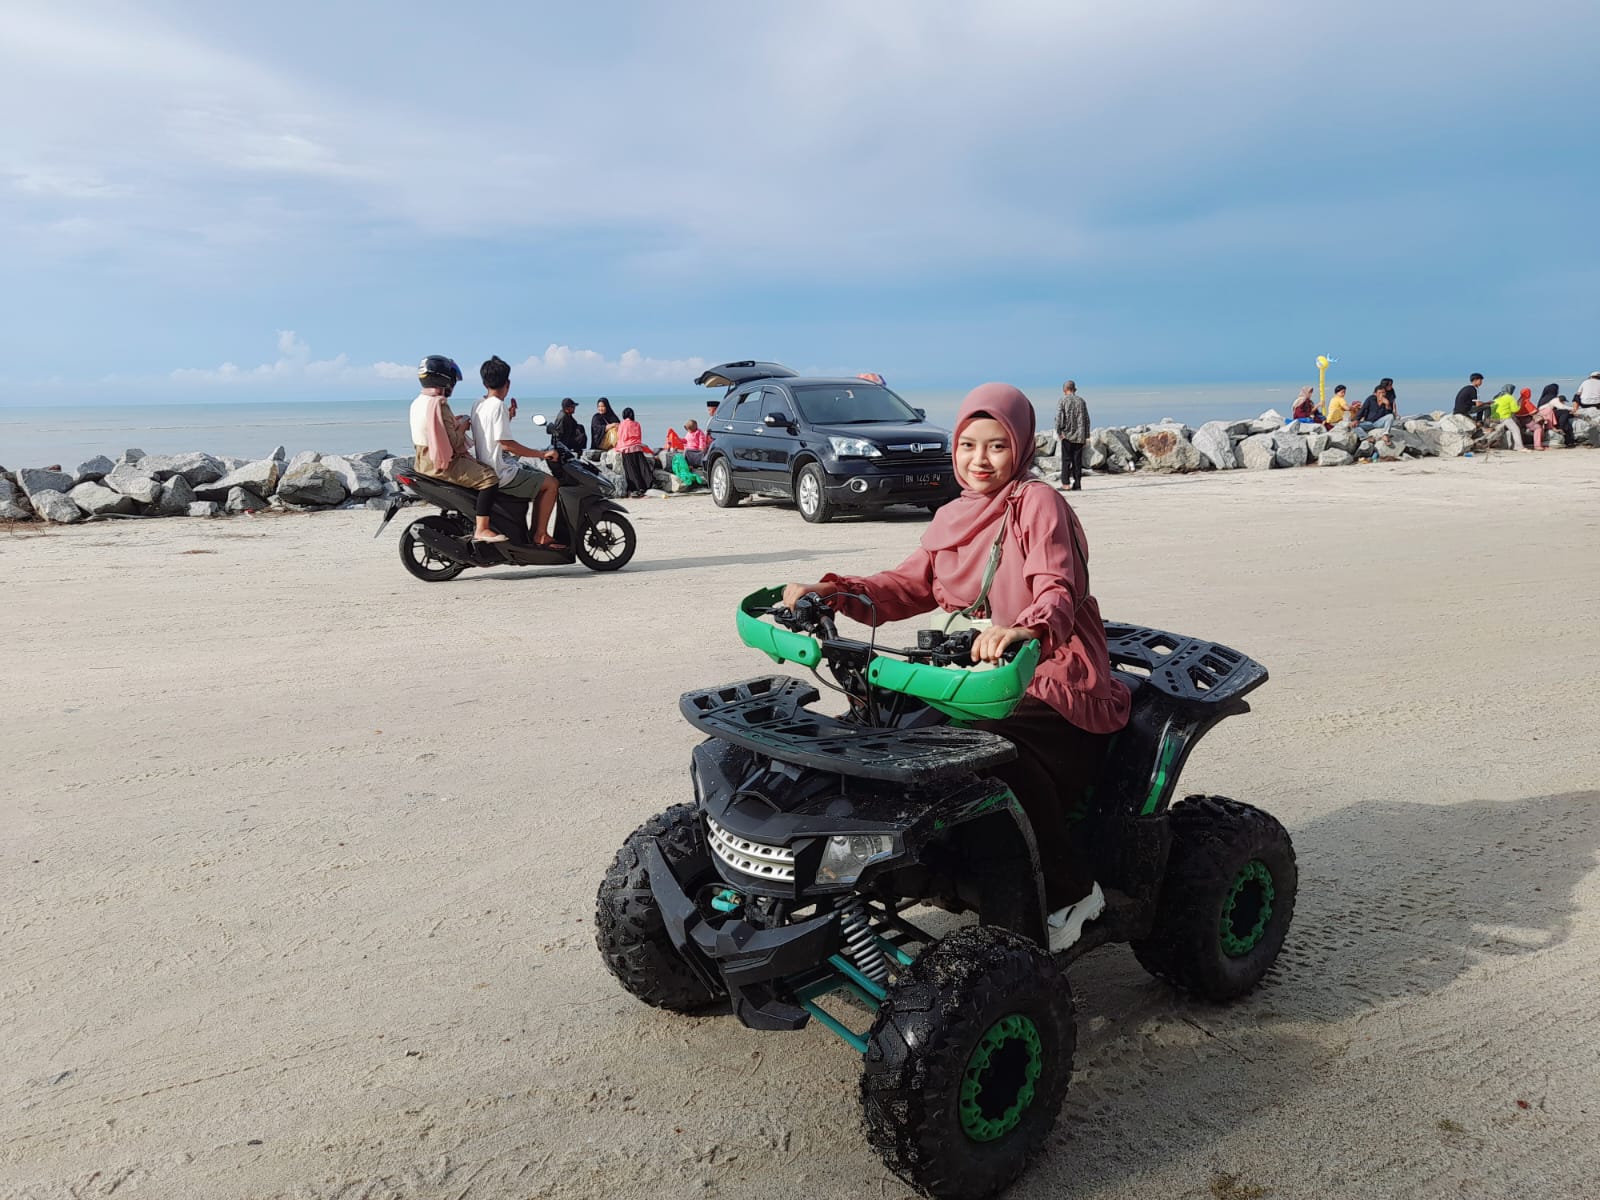 Menjajal ATV di Pantai Kebang Kemilau, Seru Habis dan Cocok untuk Liburan